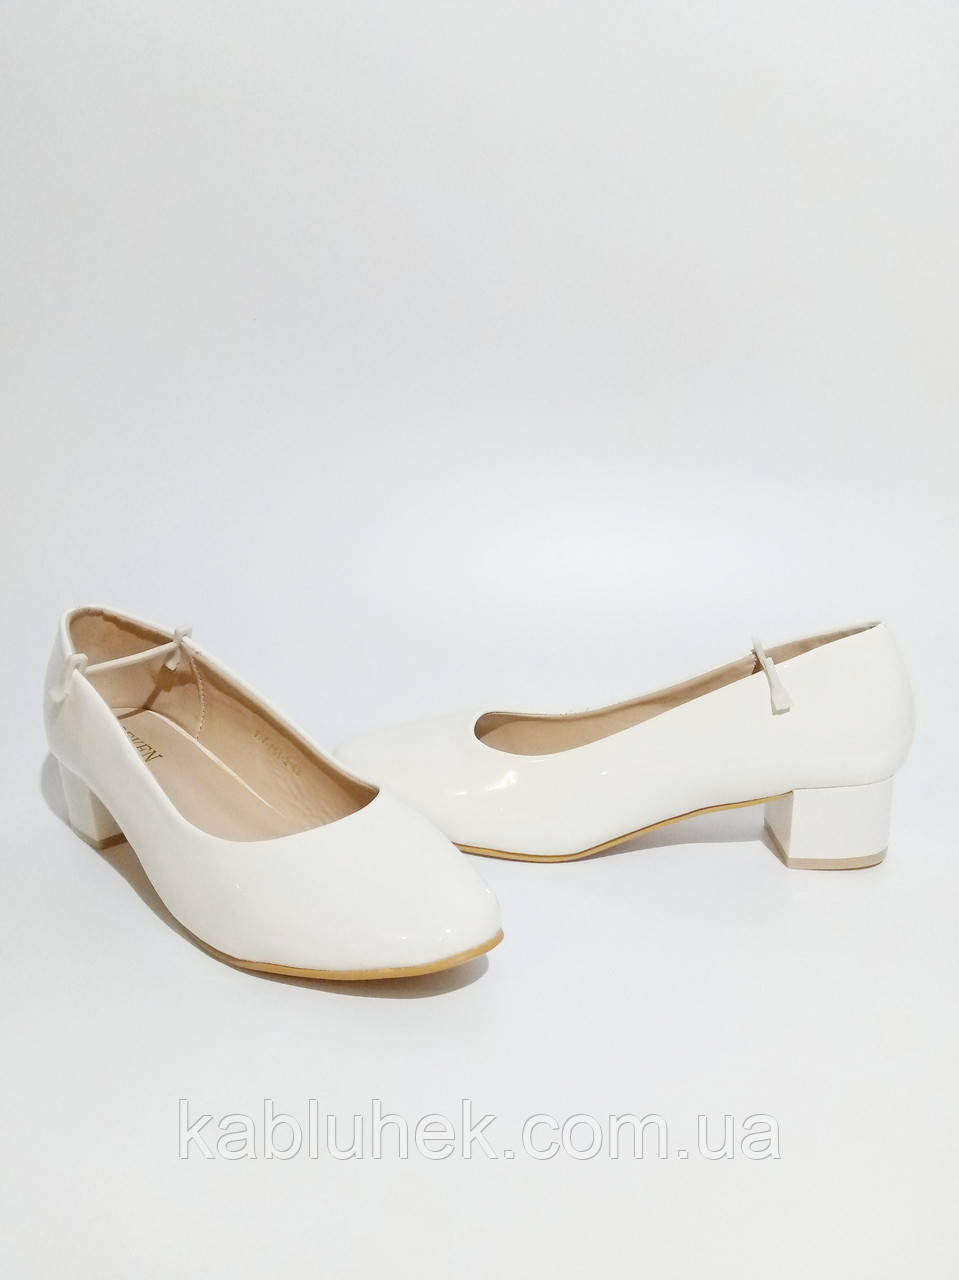 Жіночі білі туфлі великих розмірів на невеликому каблуці